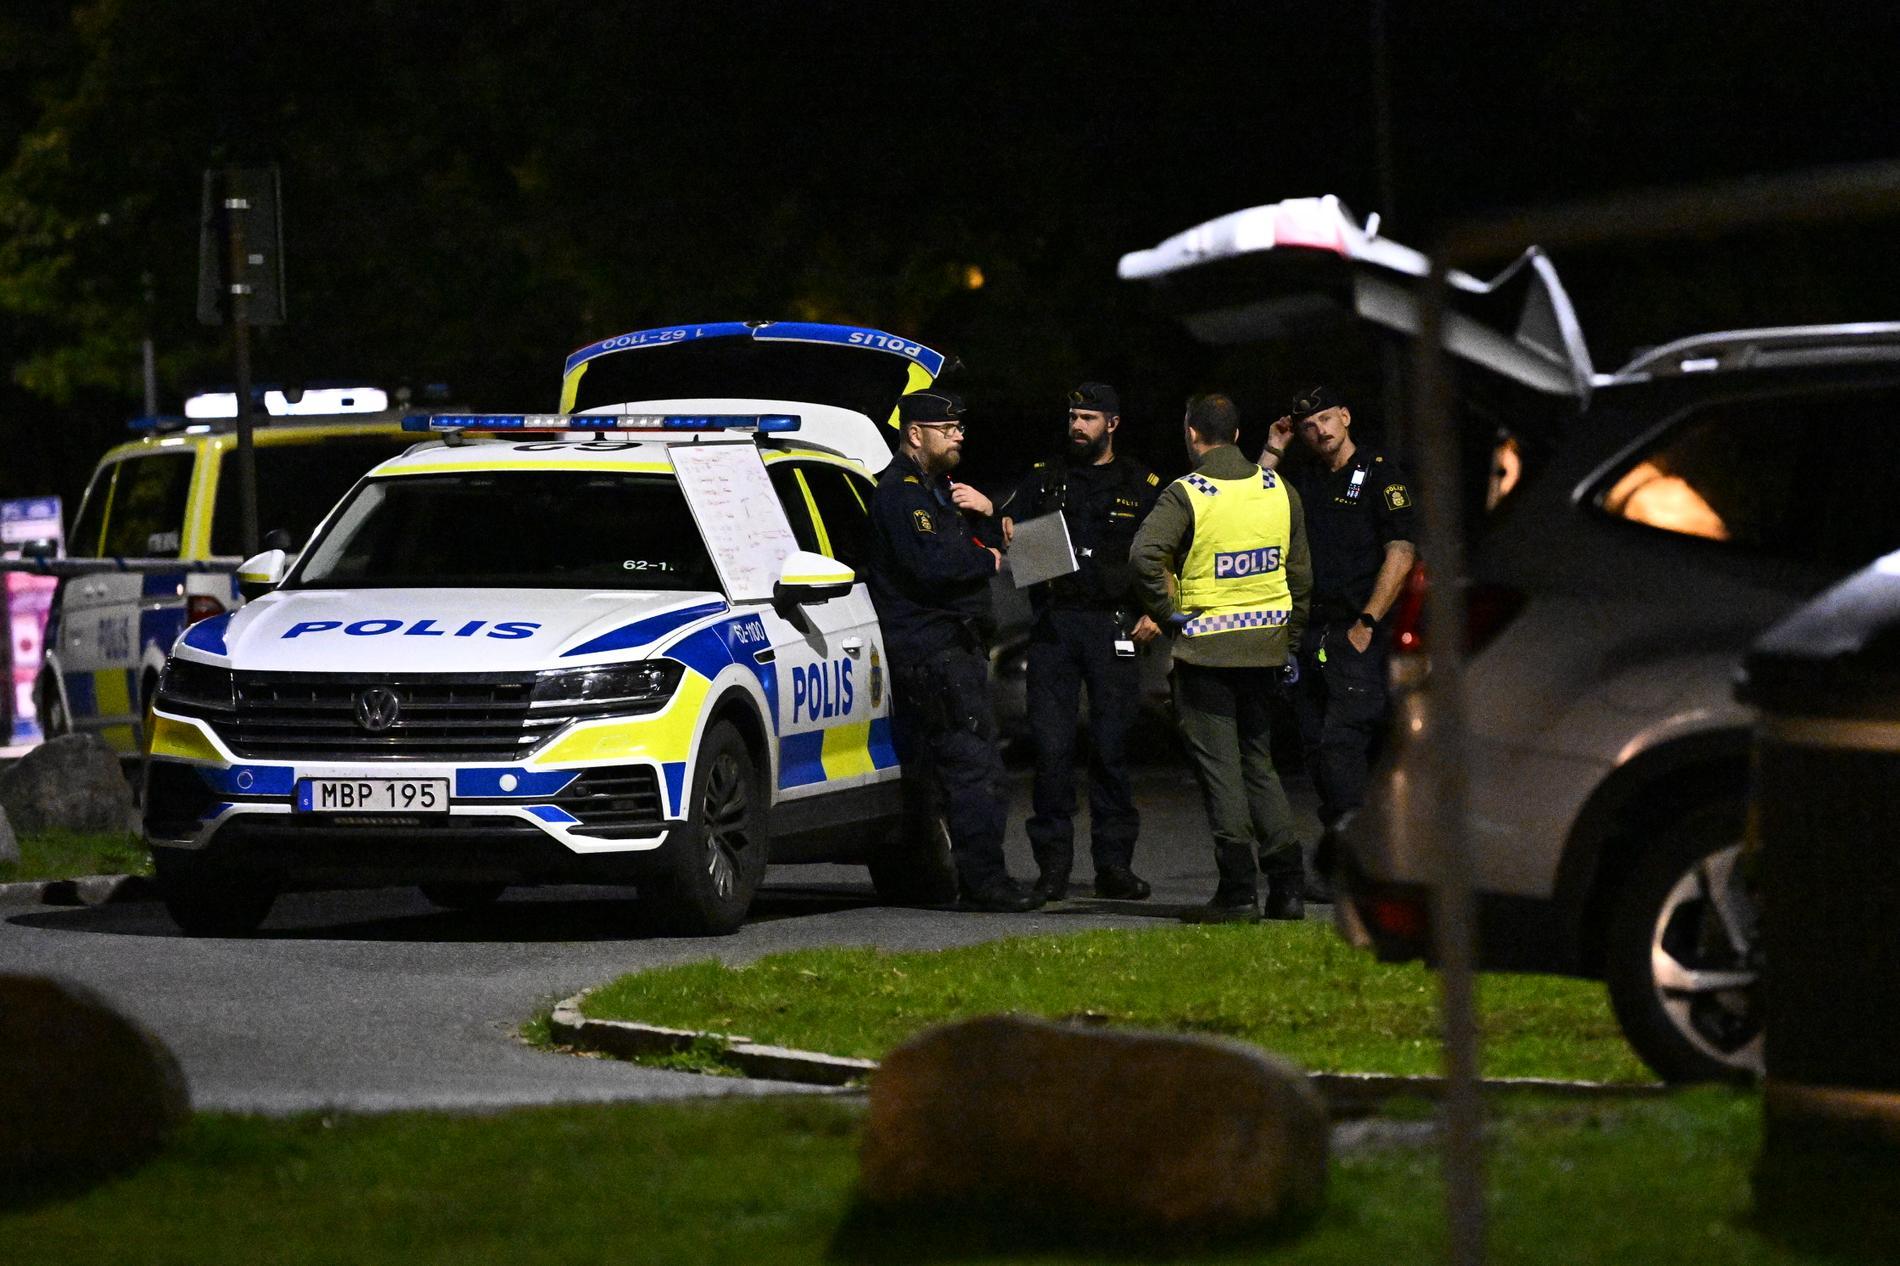 Polis på plats efter att en man hittats skjuten i Kristianstad sent på torsdagskvällen.